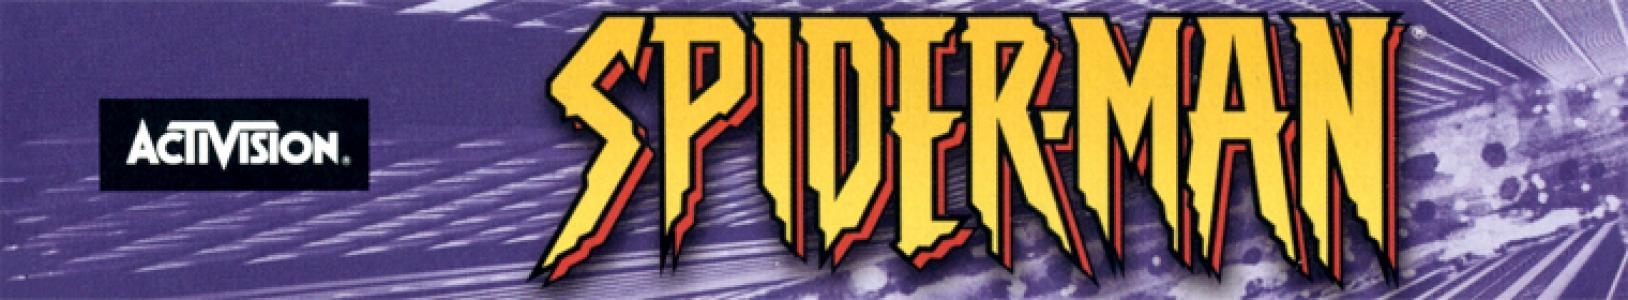 Spider-Man banner